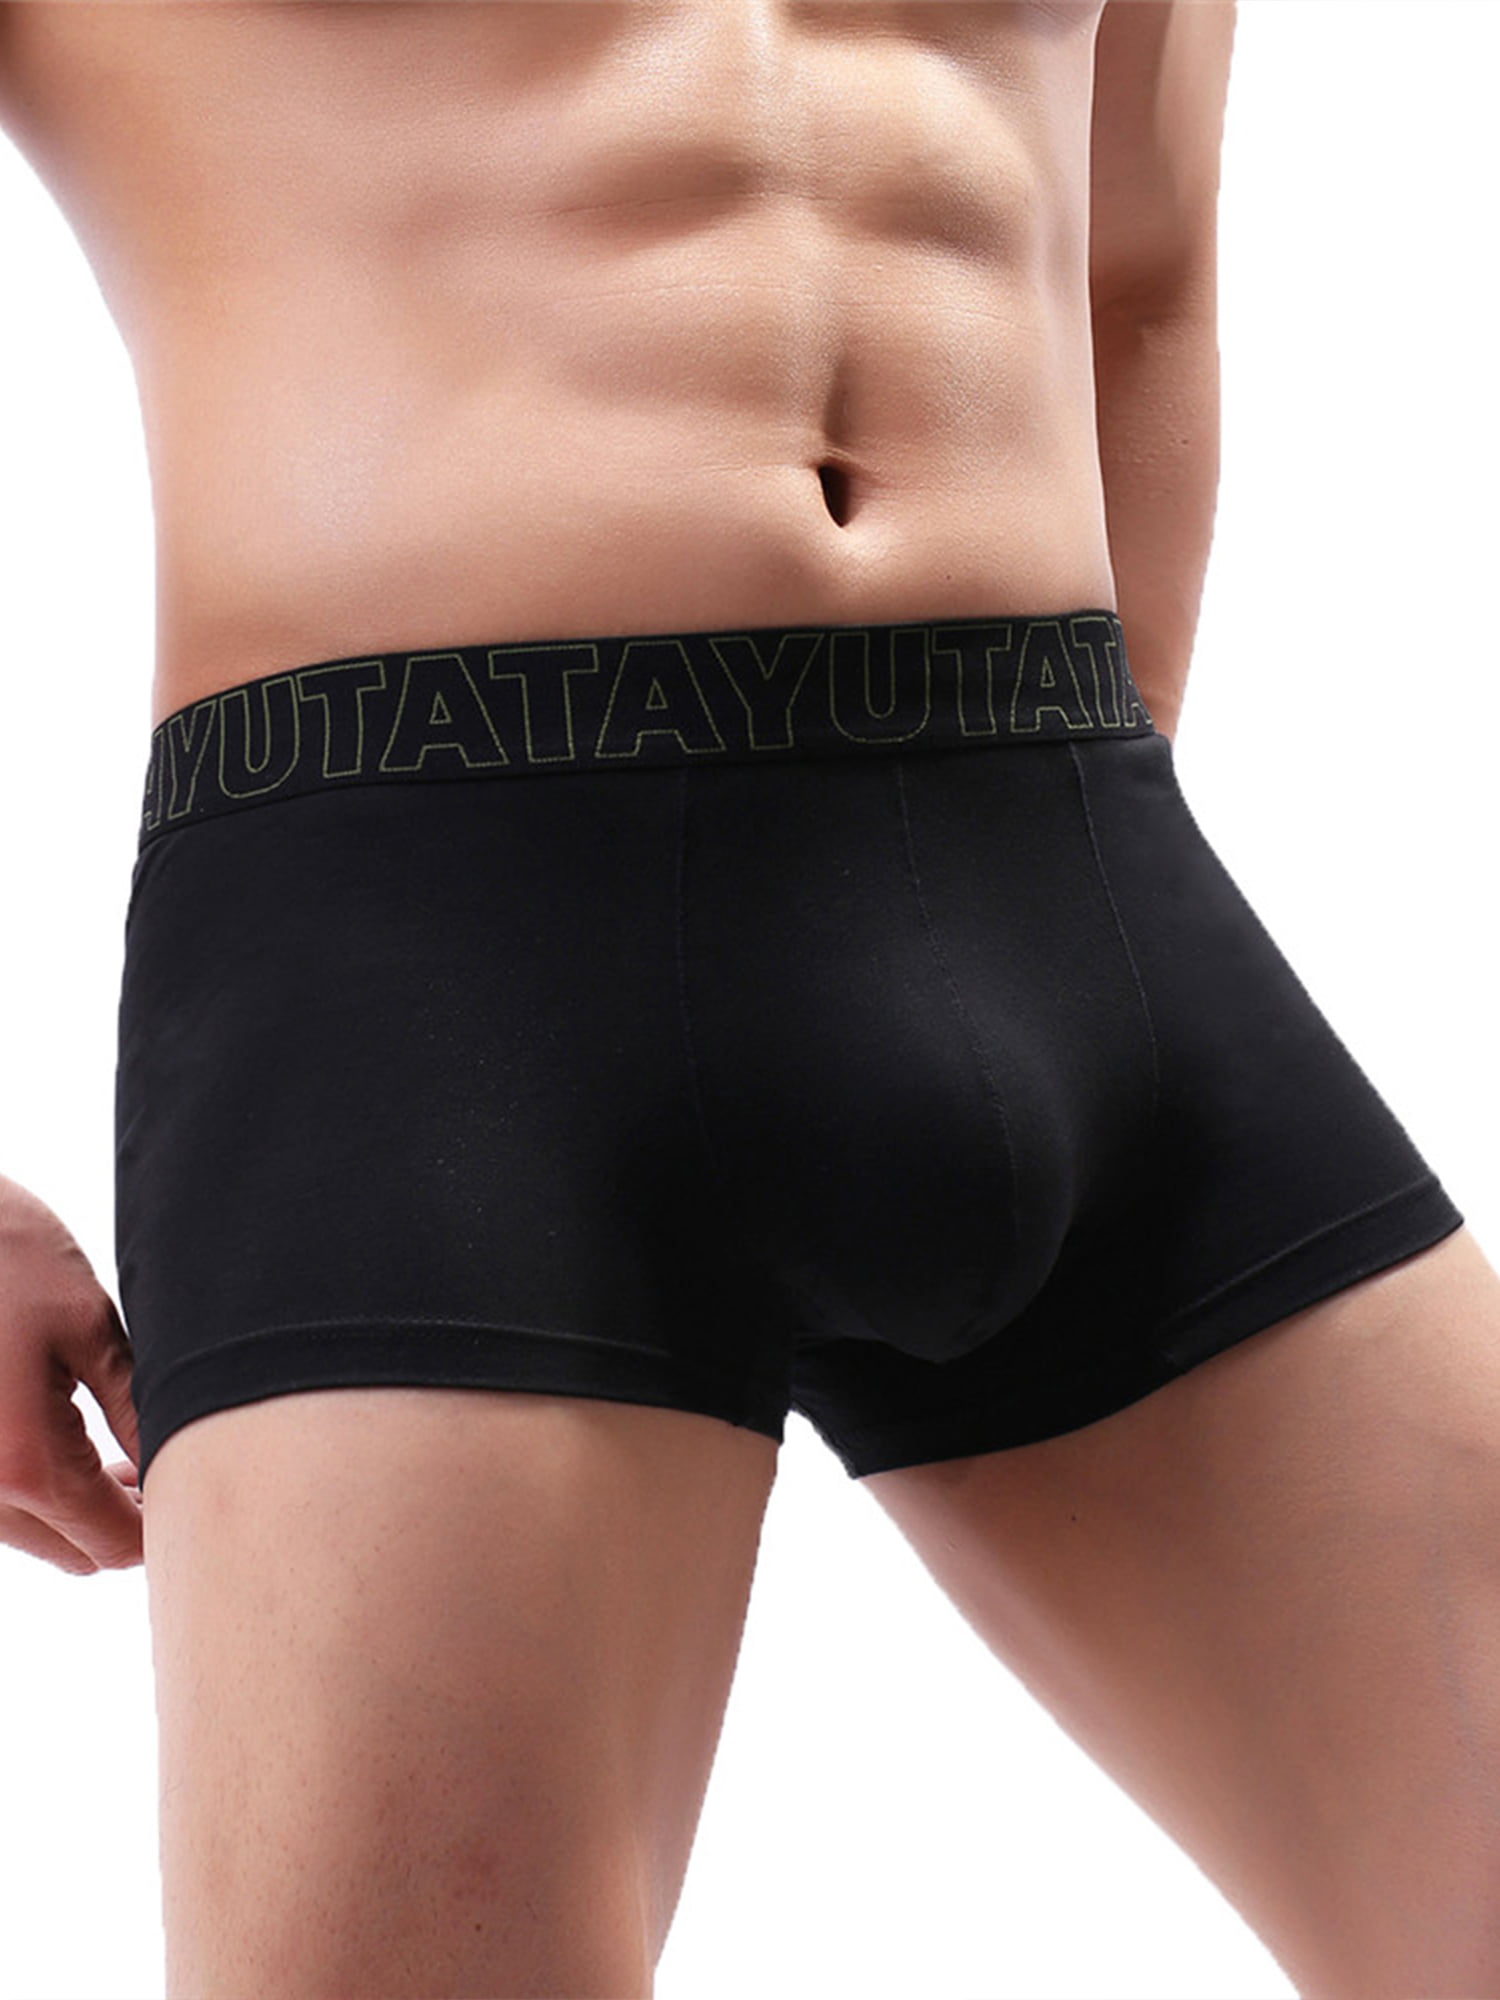 US Men Bulge Pouch Briefs Mesh Stretch Underwear Trunks Boxers Shorts Underpants